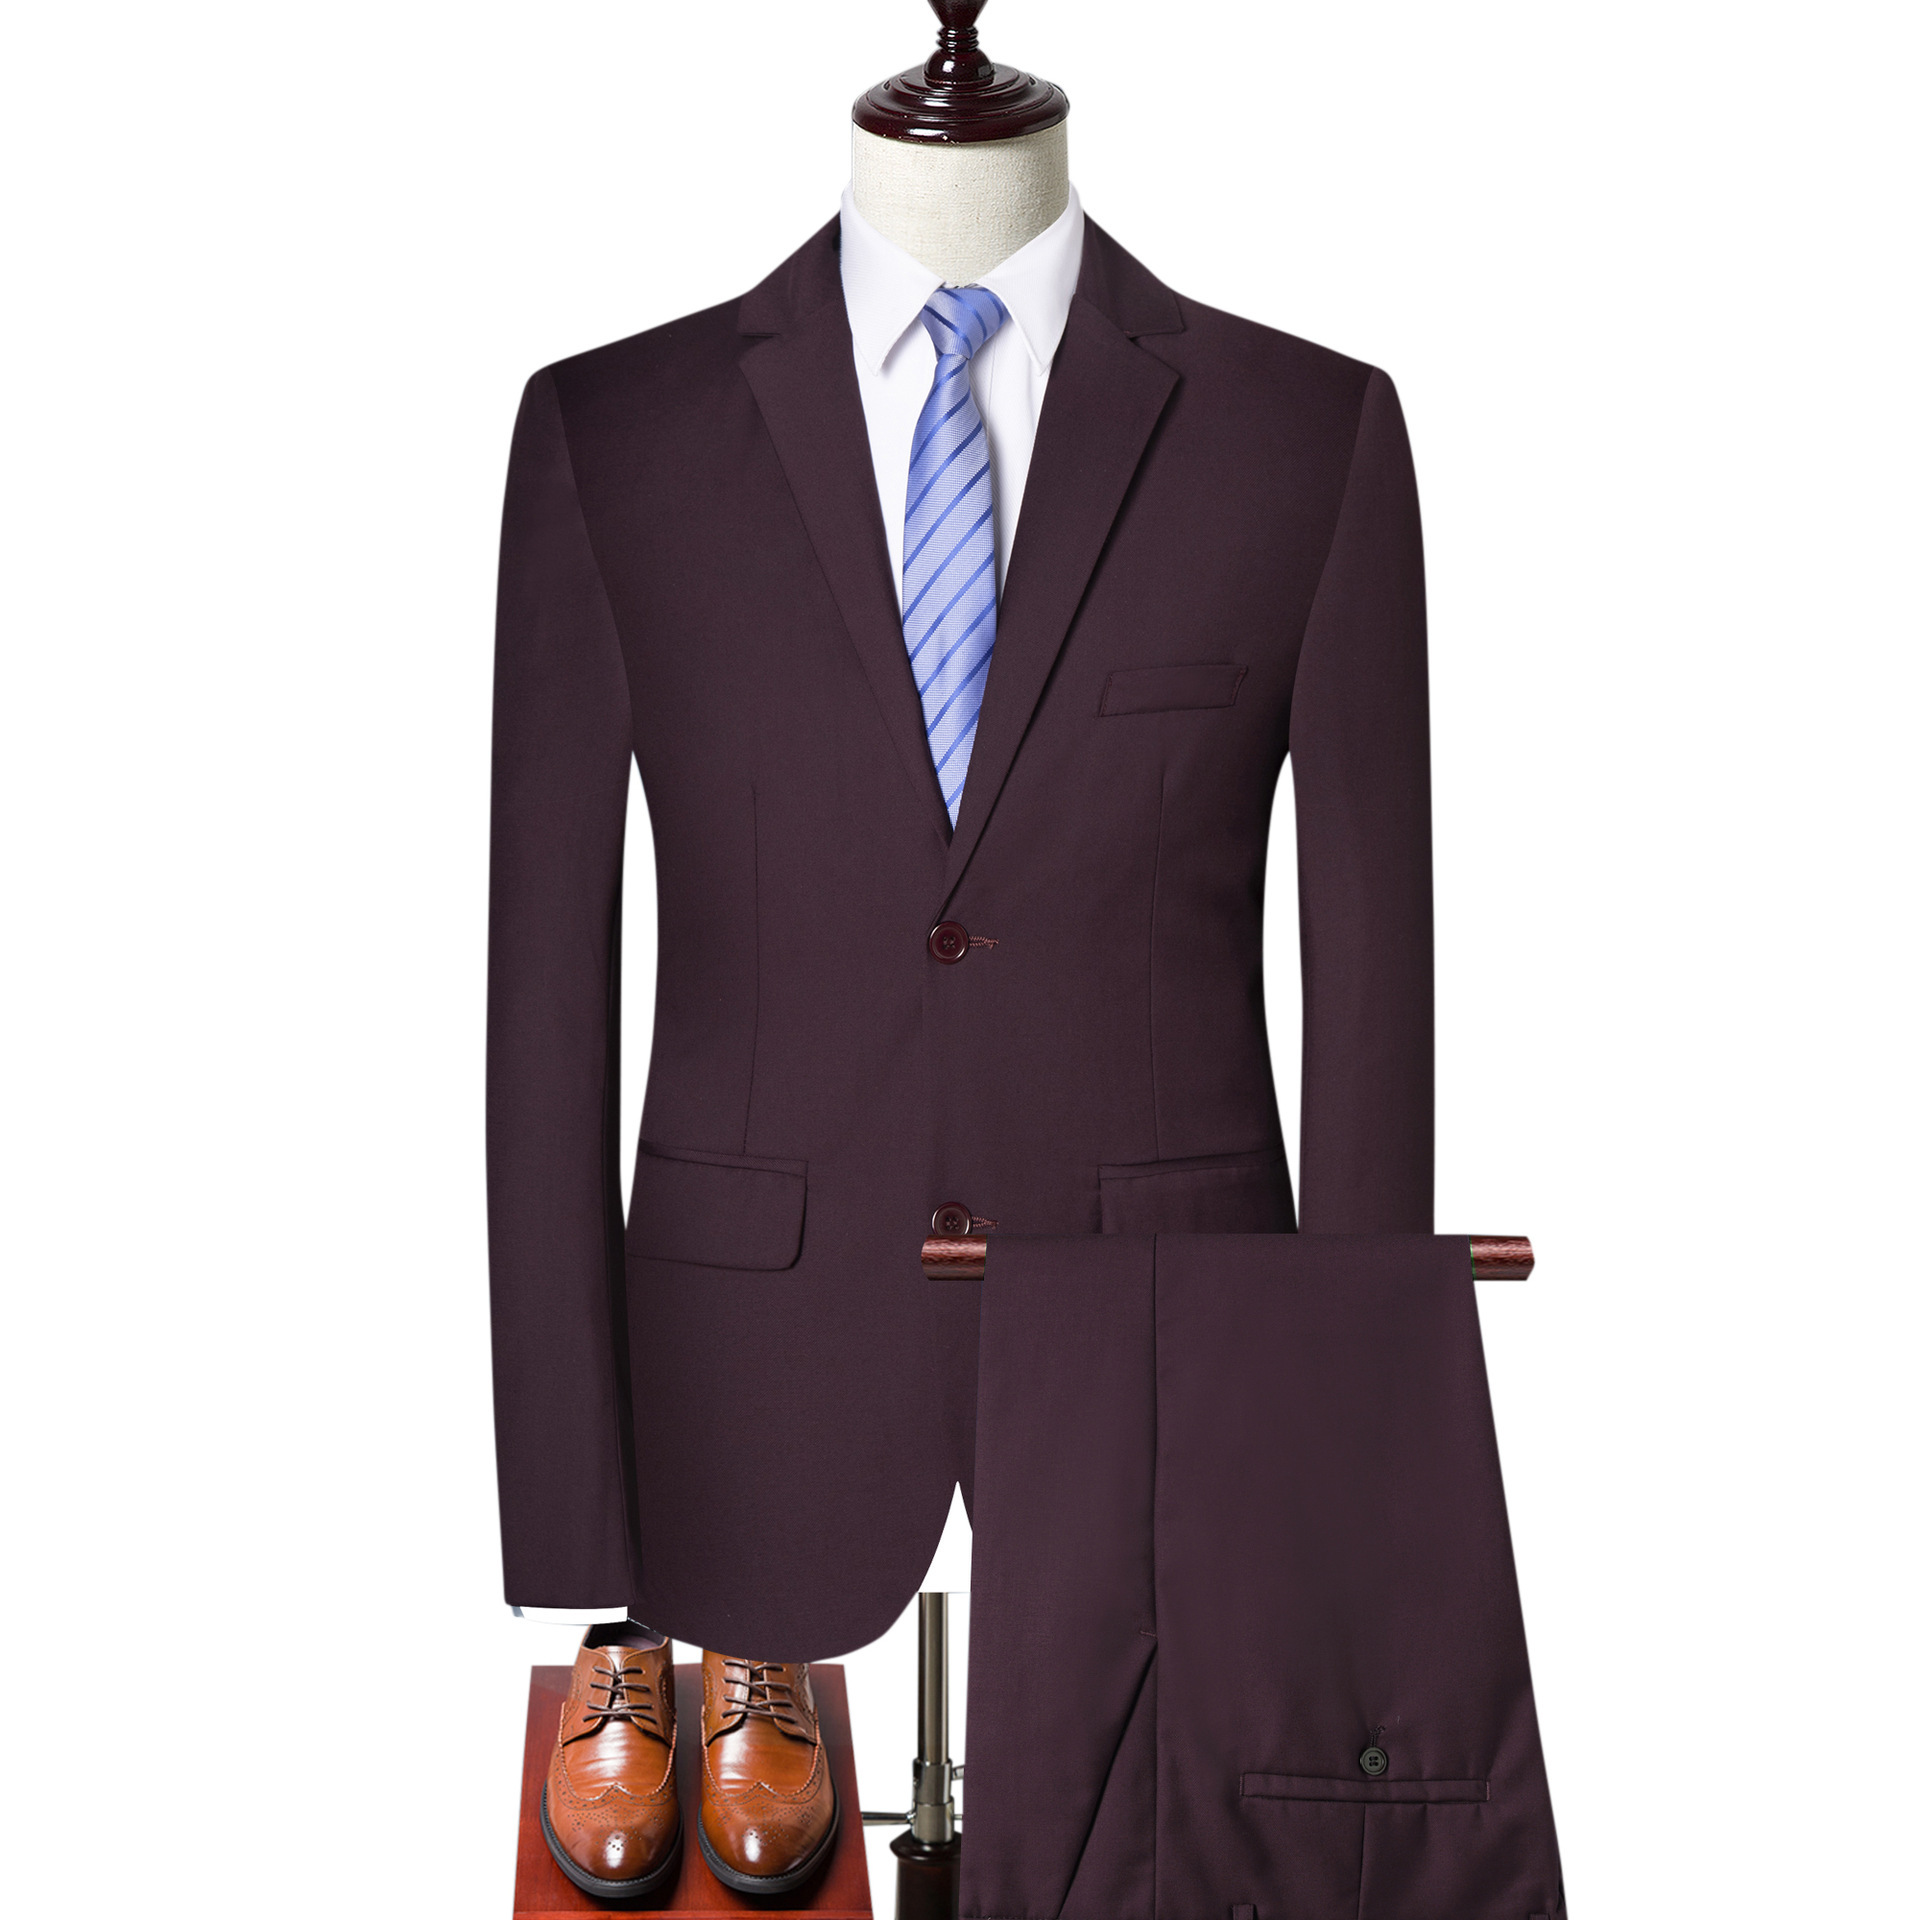 Fall 2019 new men's slim suit suit suit three piece dress men's casual large solid color suit